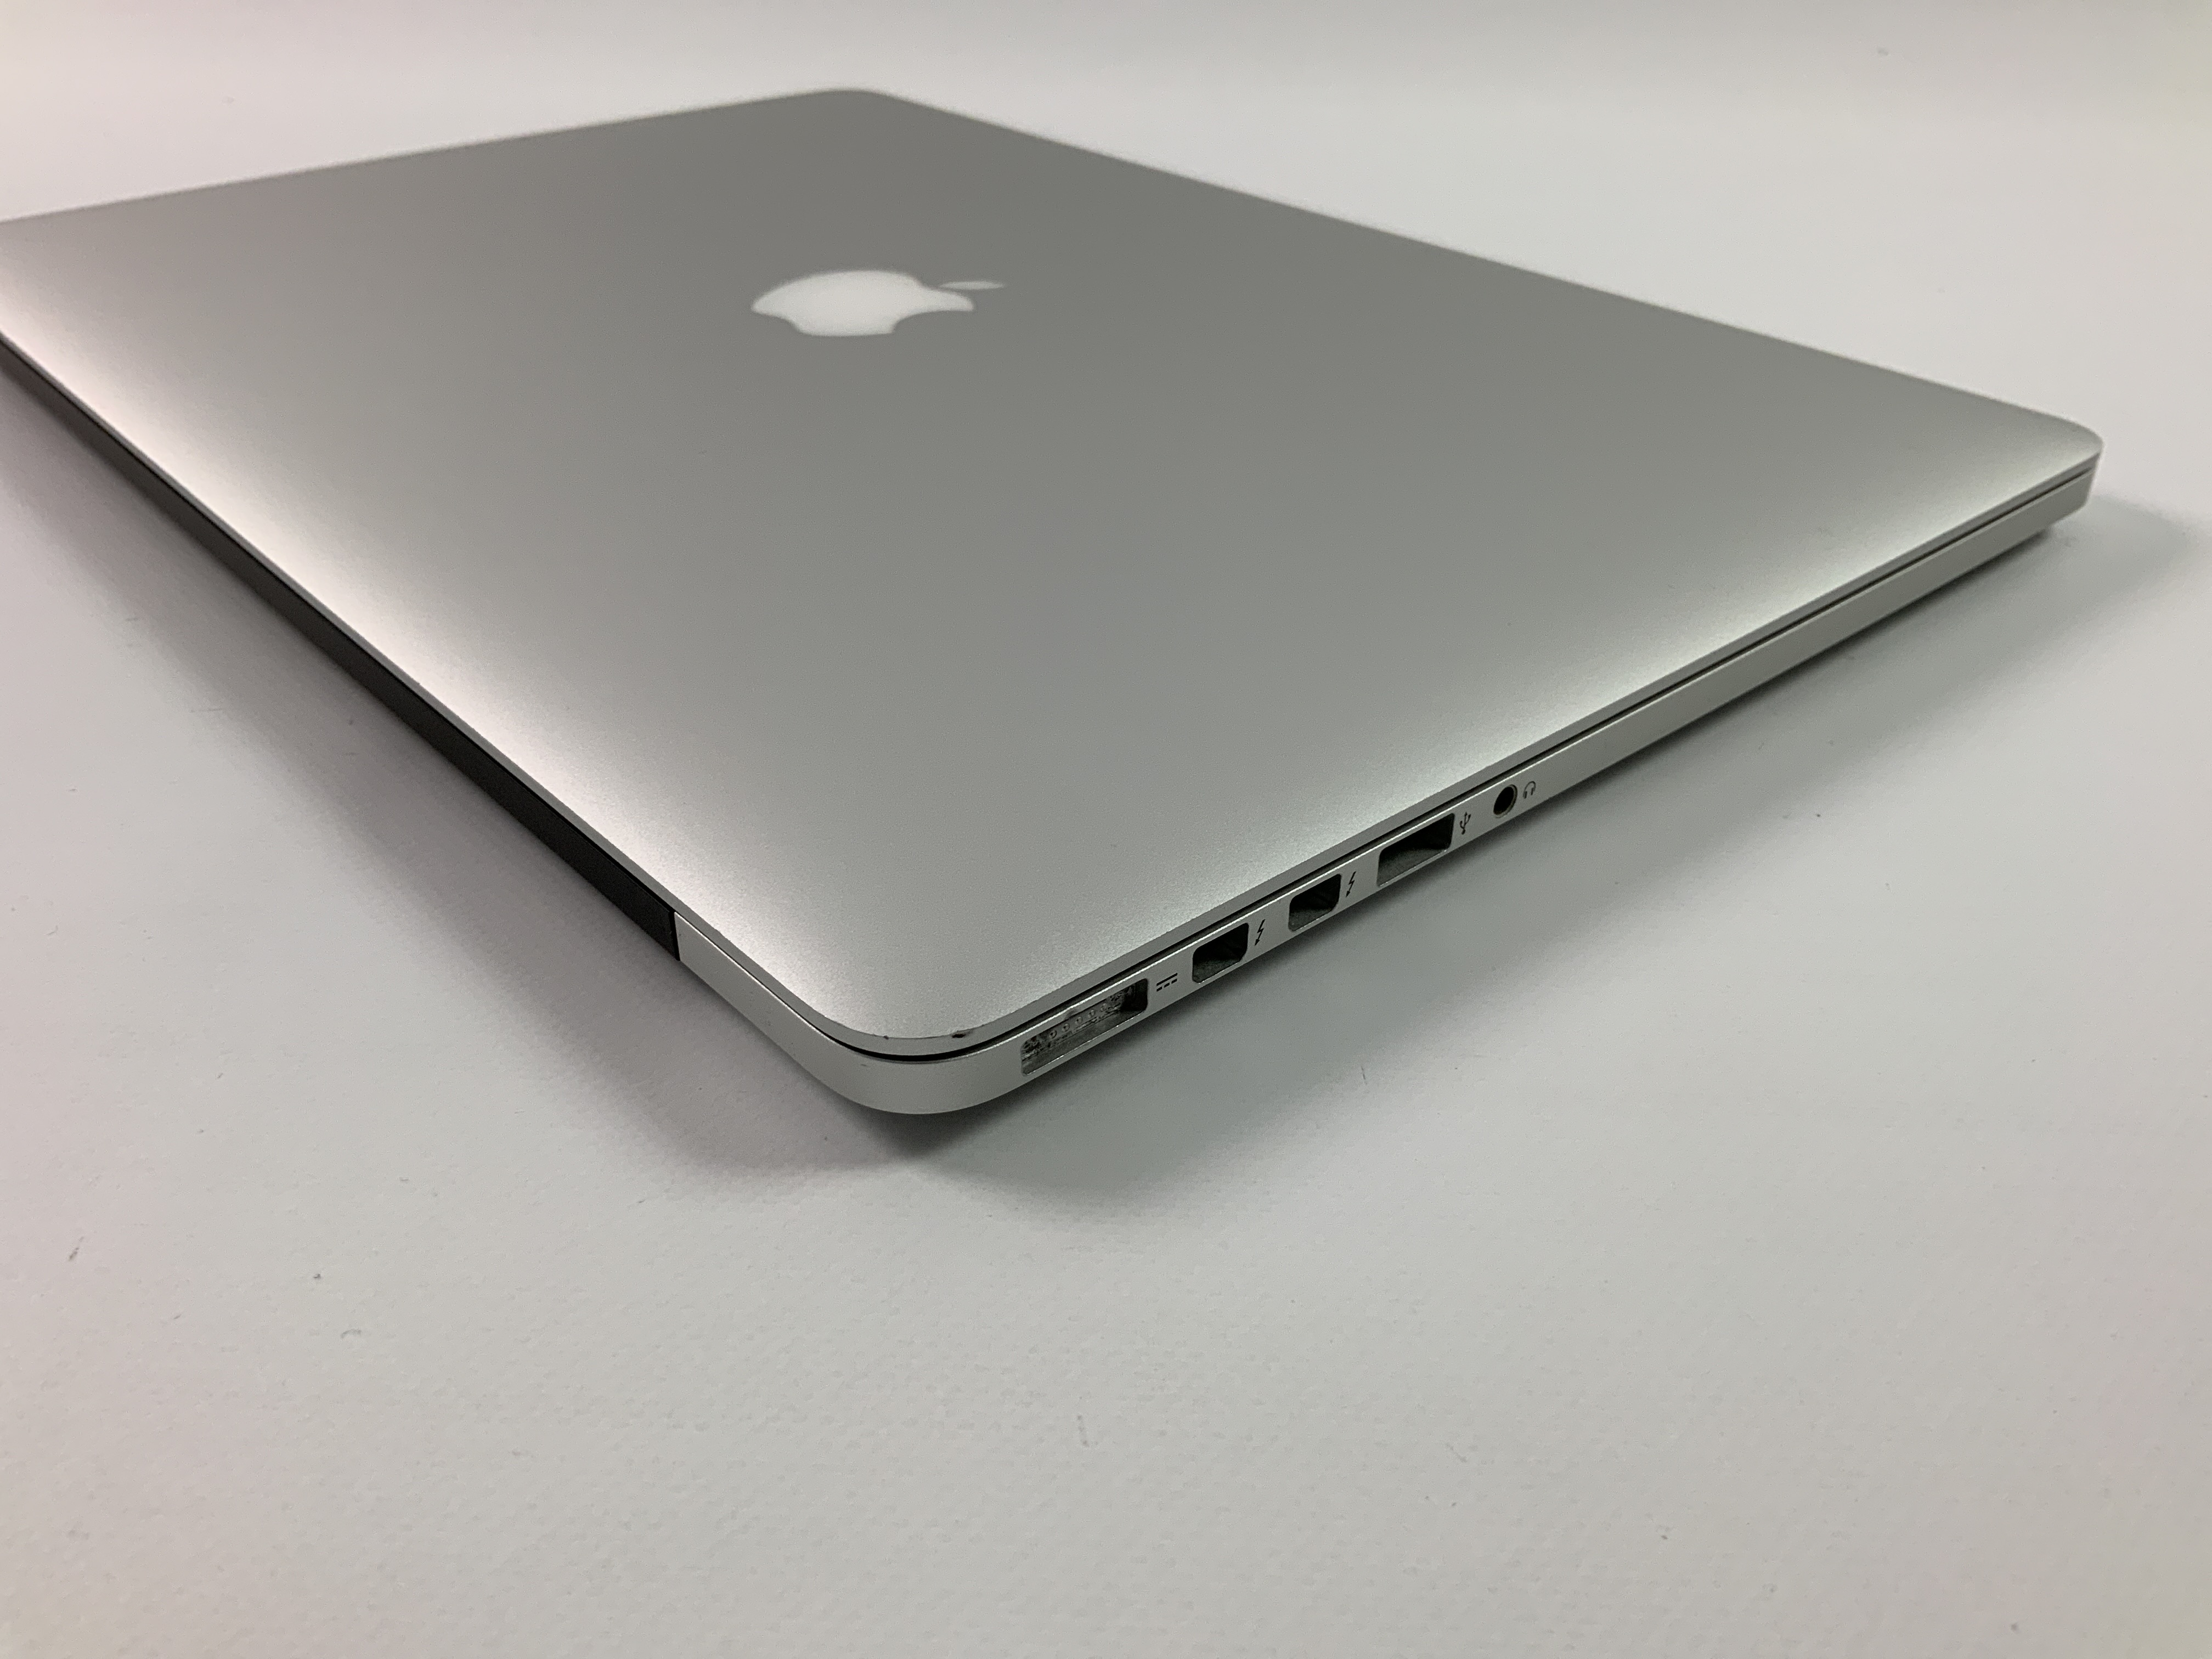 MacBook Pro Retina 15" Mid 2015 (Intel Quad-Core i7 2.2 GHz 16 GB RAM 256 GB SSD), Intel Quad-Core i7 2.2 GHz, 16 GB RAM, 256 GB SSD, Kuva 3